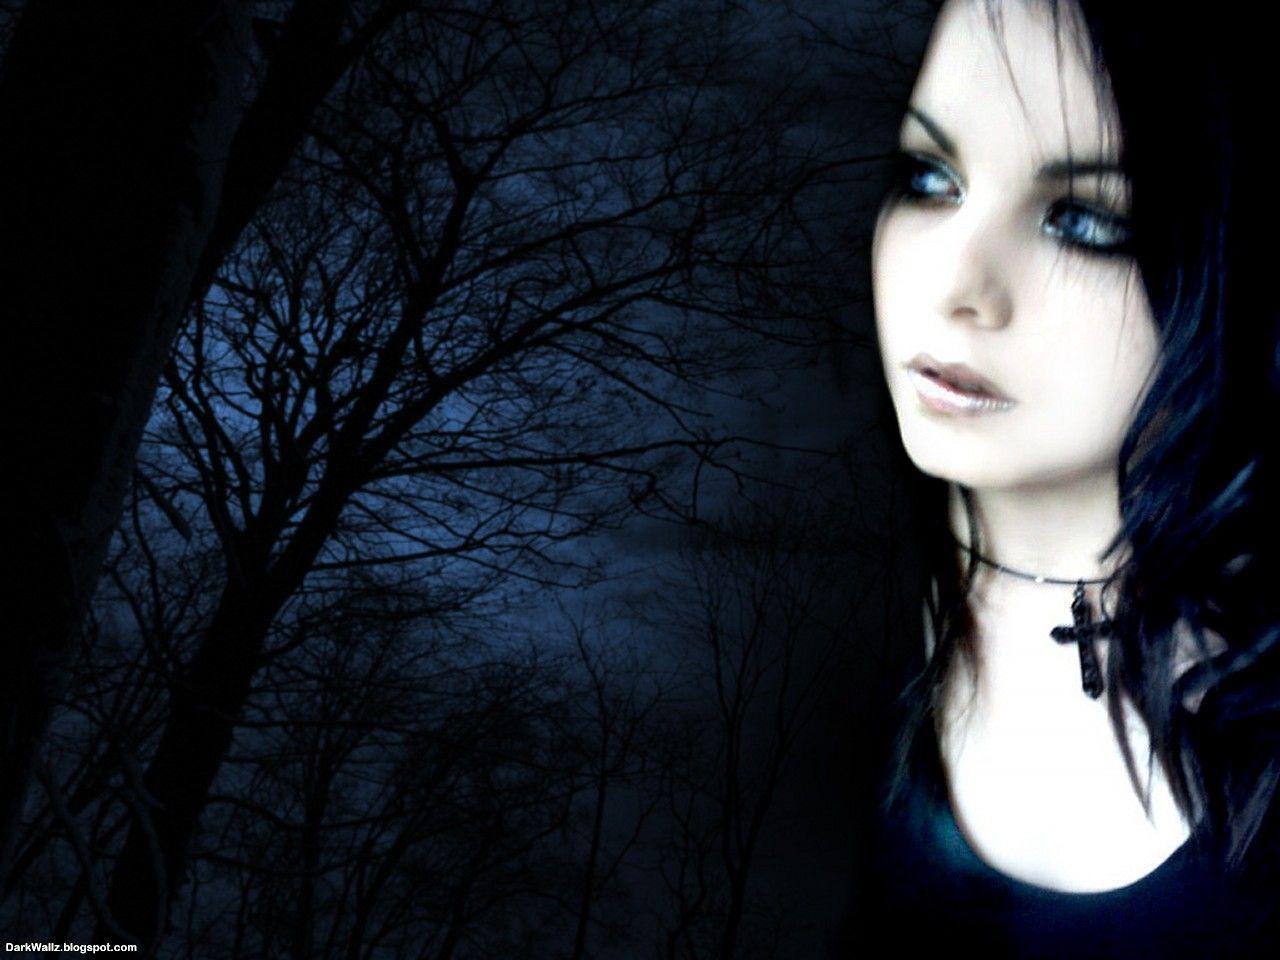 Dark Girl with background dark gothic wallpaper. Dark Wallpaper